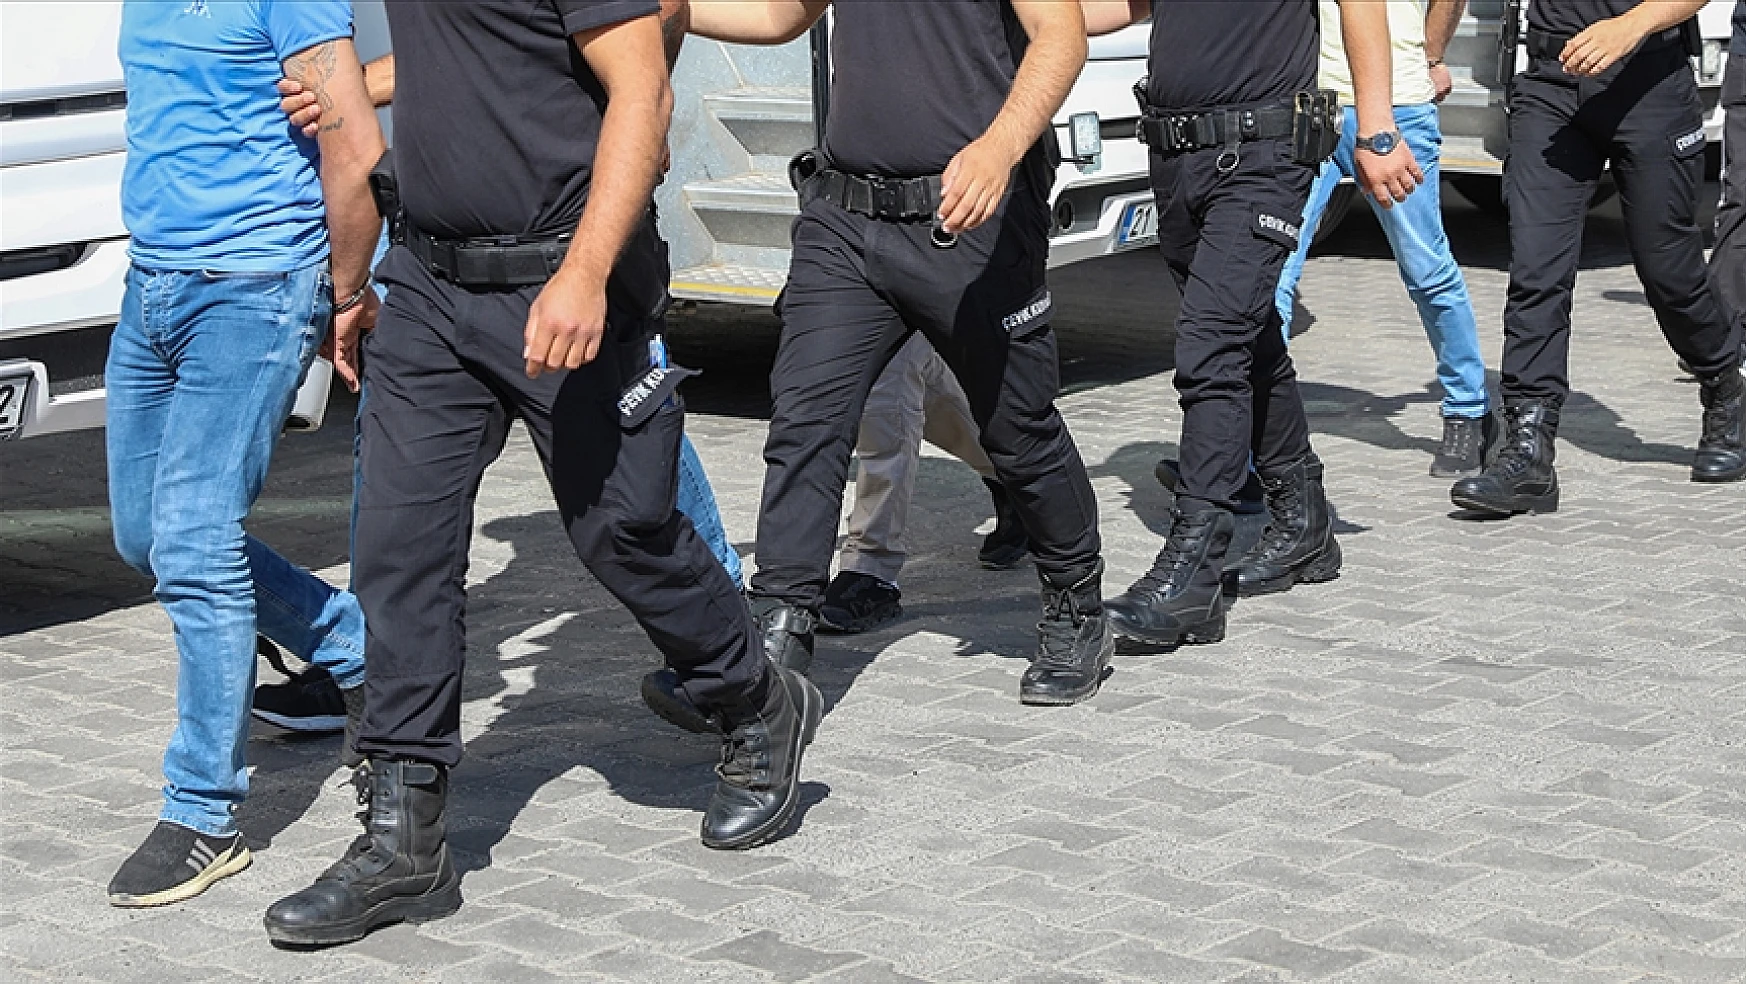 Kökünü Kurutma Operasyonu'nda 171 kişi tutuklandı